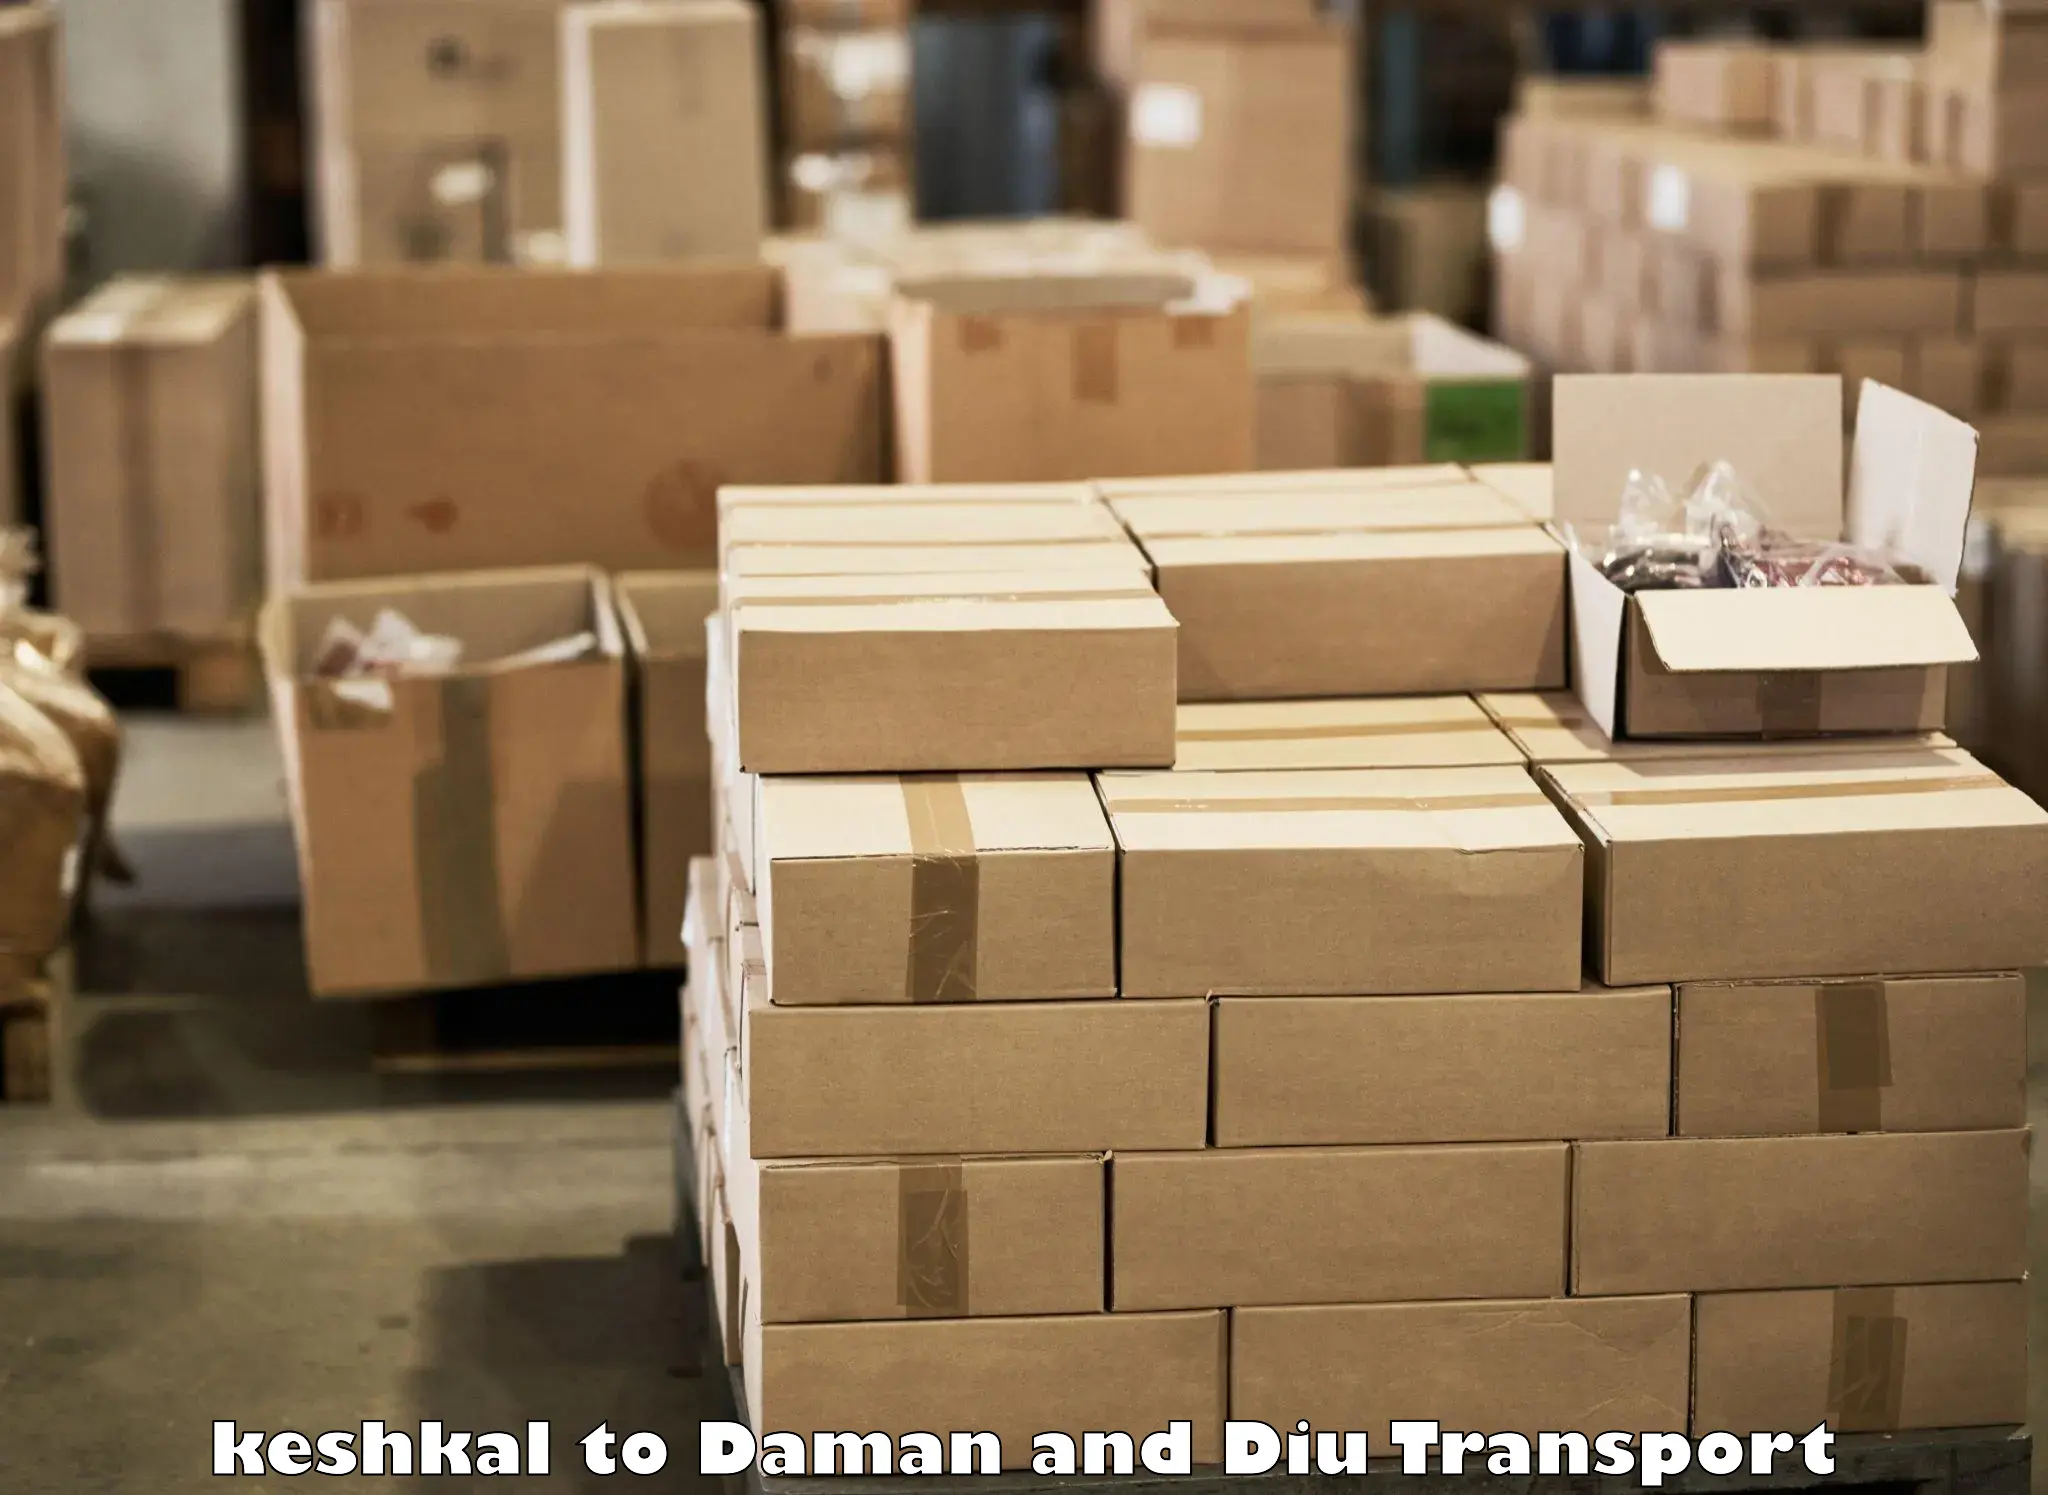 Parcel transport services keshkal to Daman